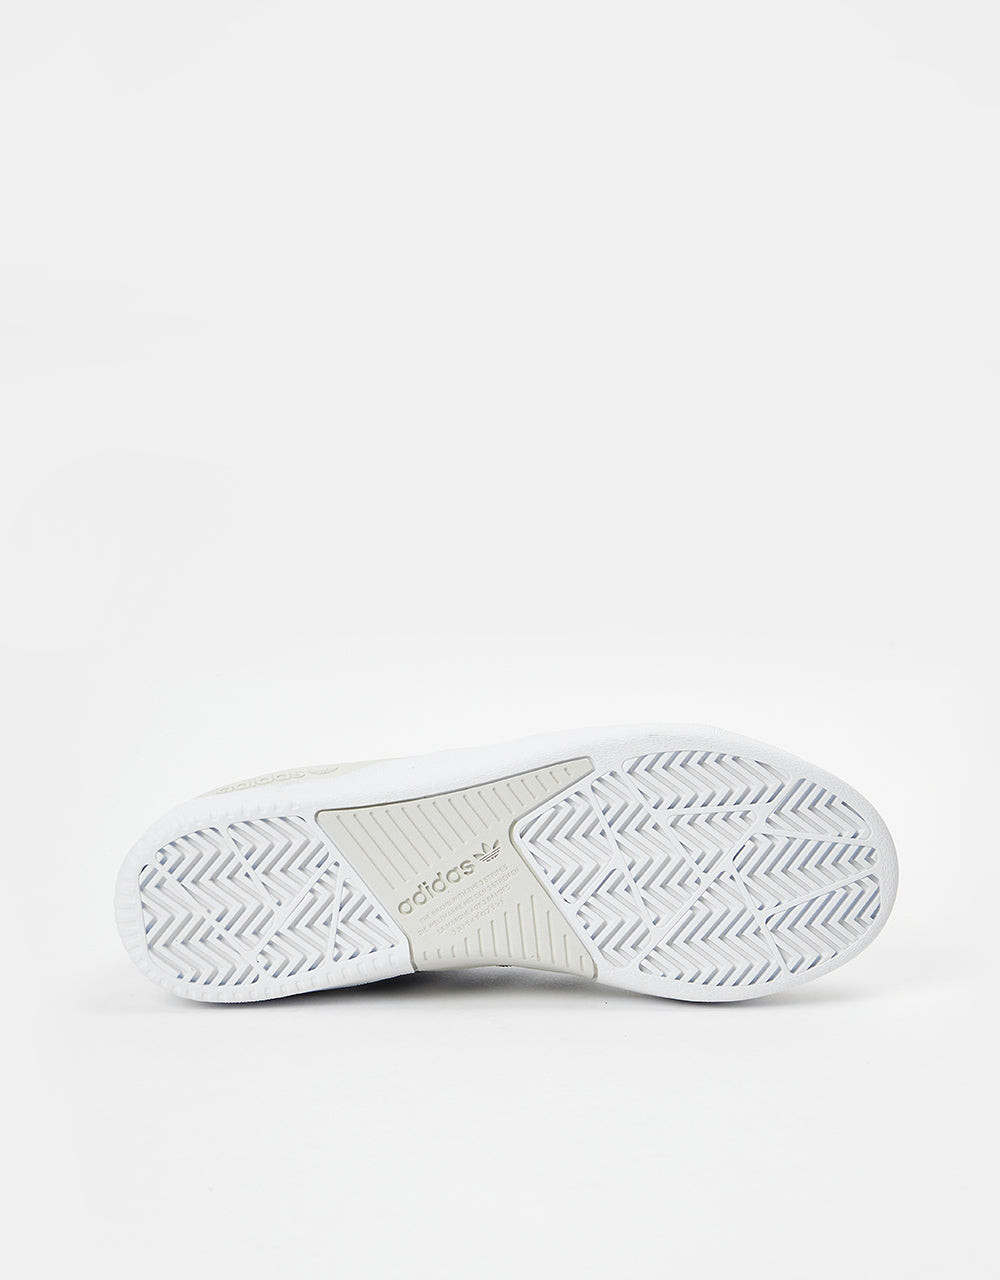 adidas Tyshawn Skate Shoes - White/Collegiate Navy/Grey